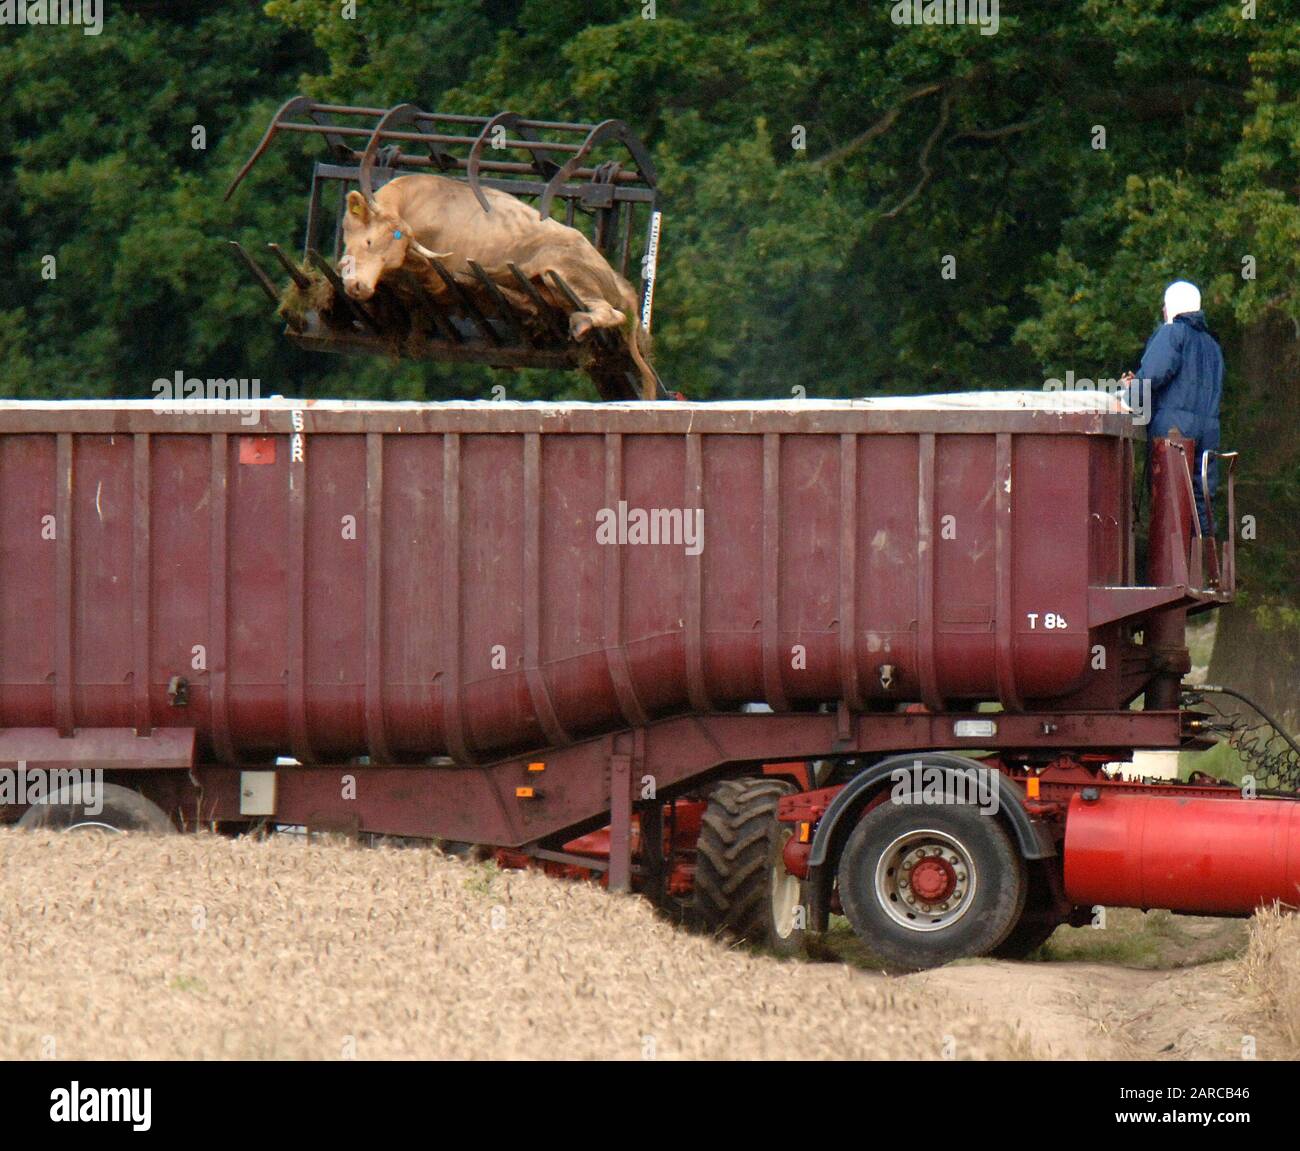 Bestiame morto rimosso da DEFRA da una fattoria in Normandia nel Surrey, scenario di seconda epidemia di afta epizootica nel 2007. Foto Stock